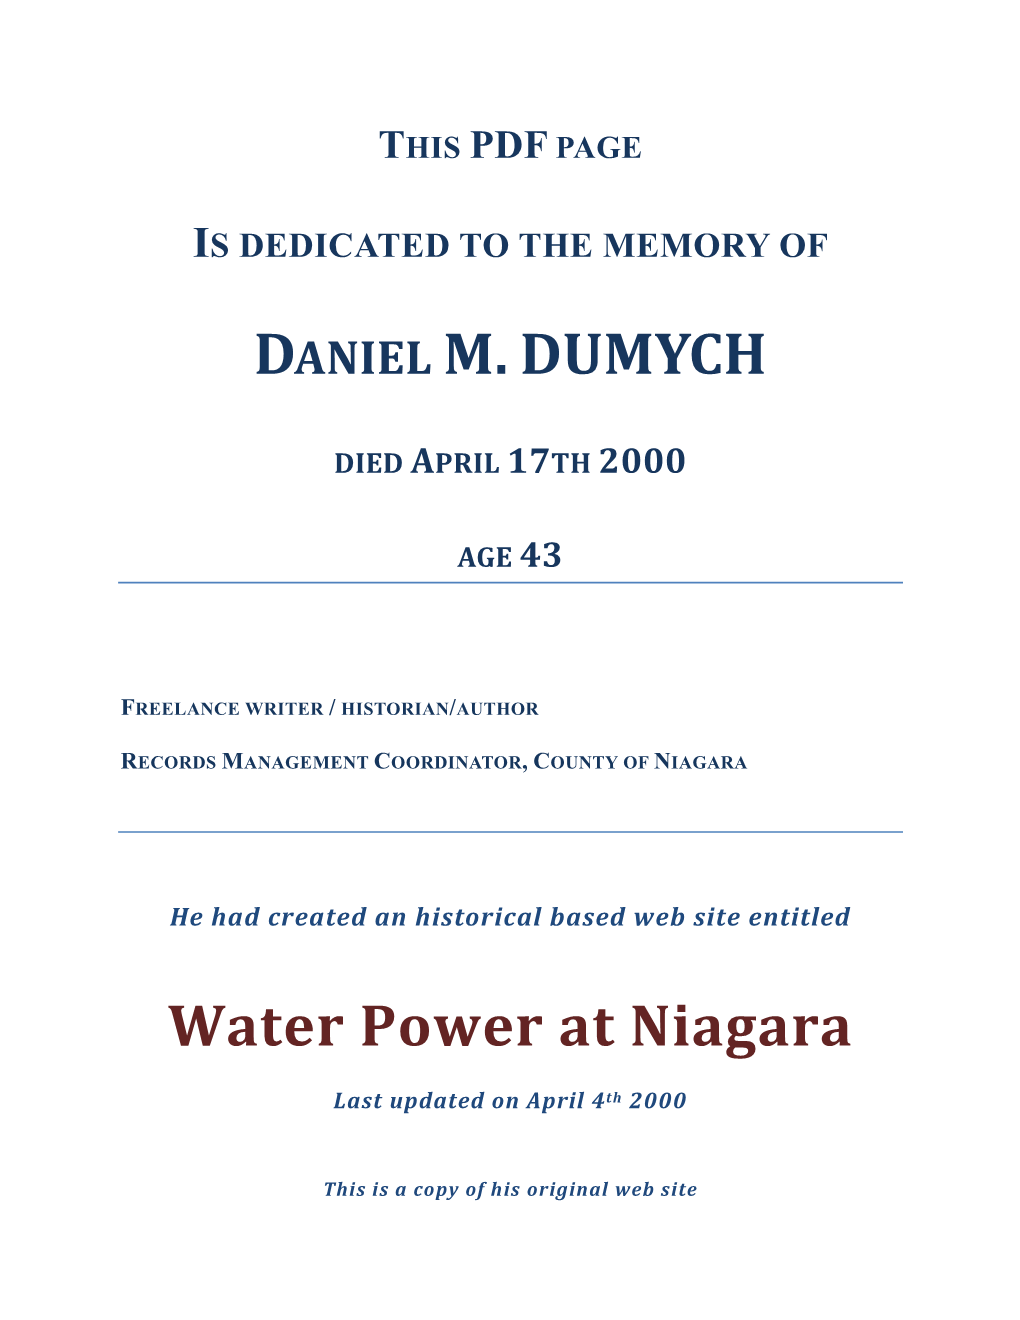 DANIEL M.DUMYCH Water Power at Niagara